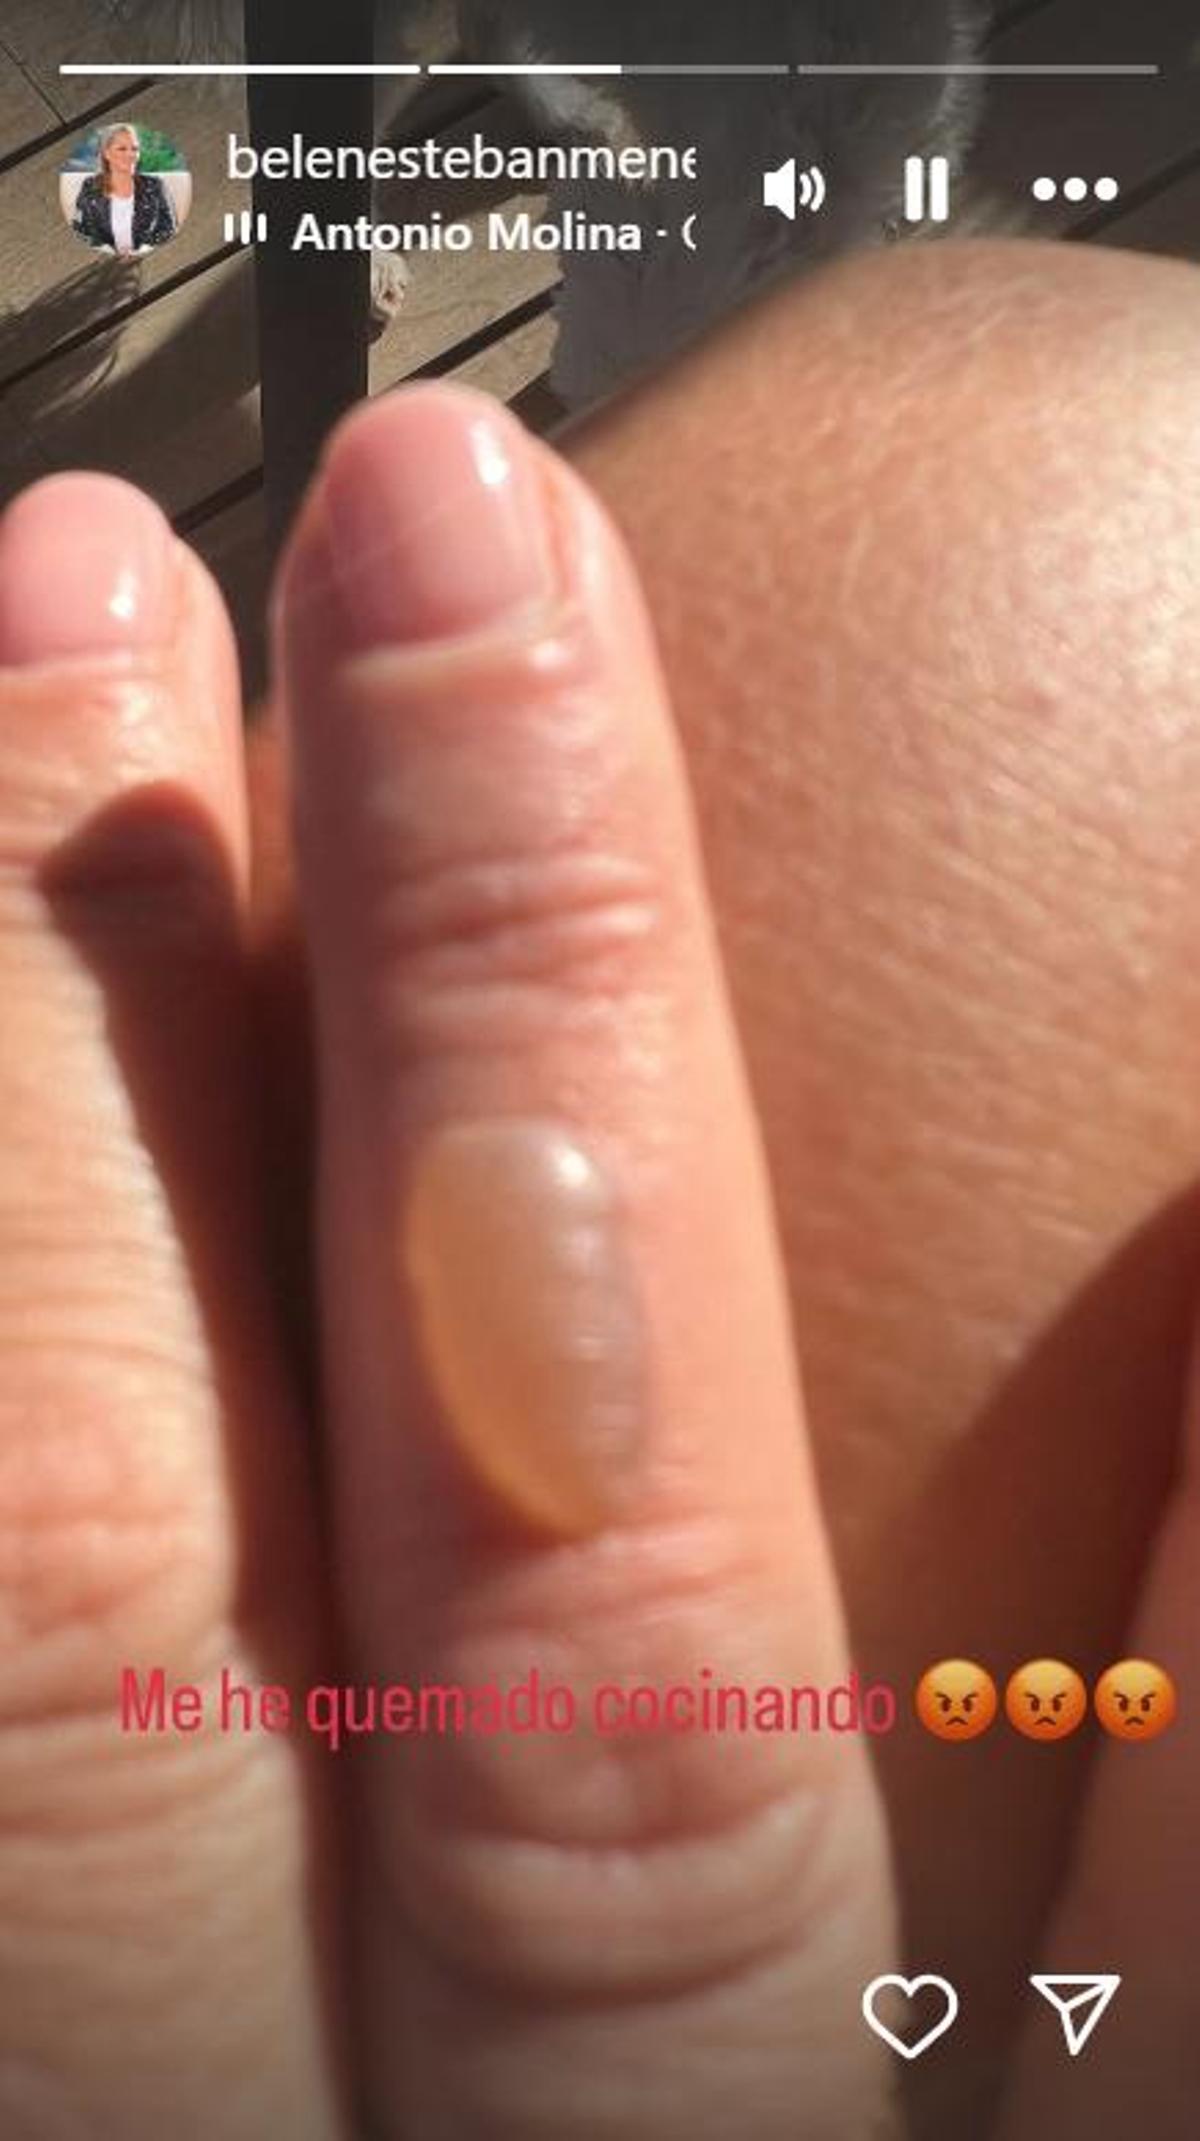 La ampolla del dedo de Belén Esteban